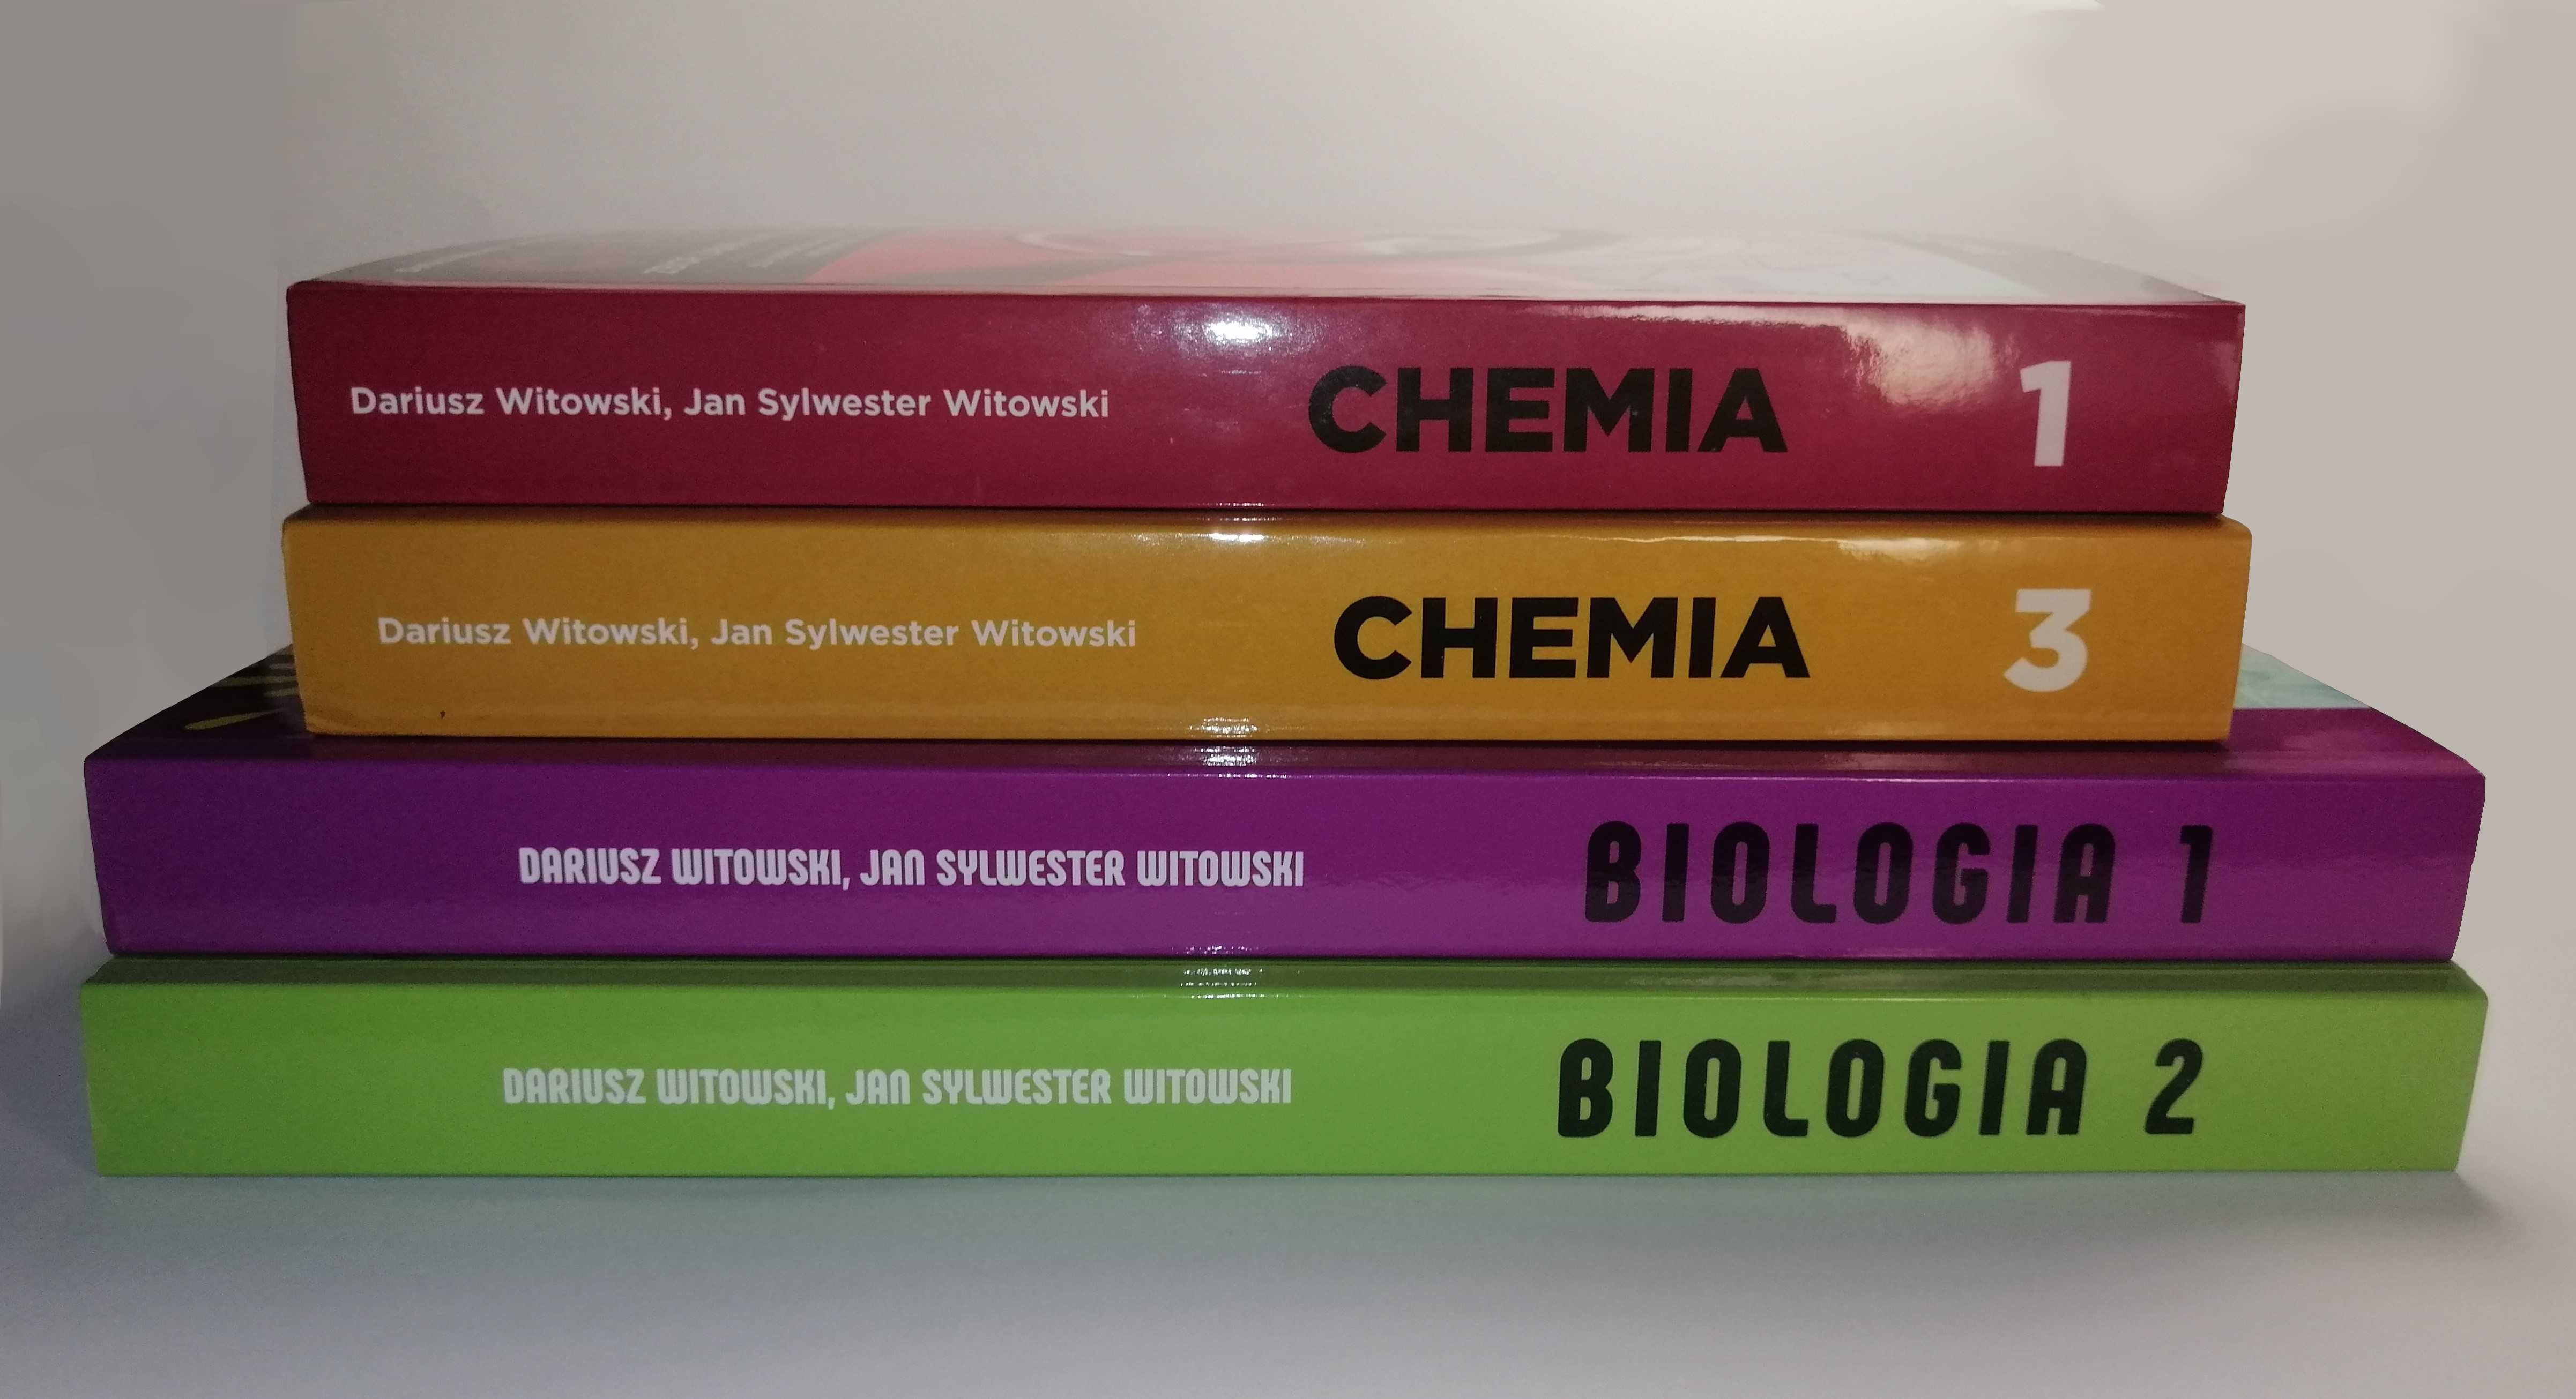 Książka: CHEMIA 1 zbiór zadań wraz z odpowiedziami skrypt Witowski